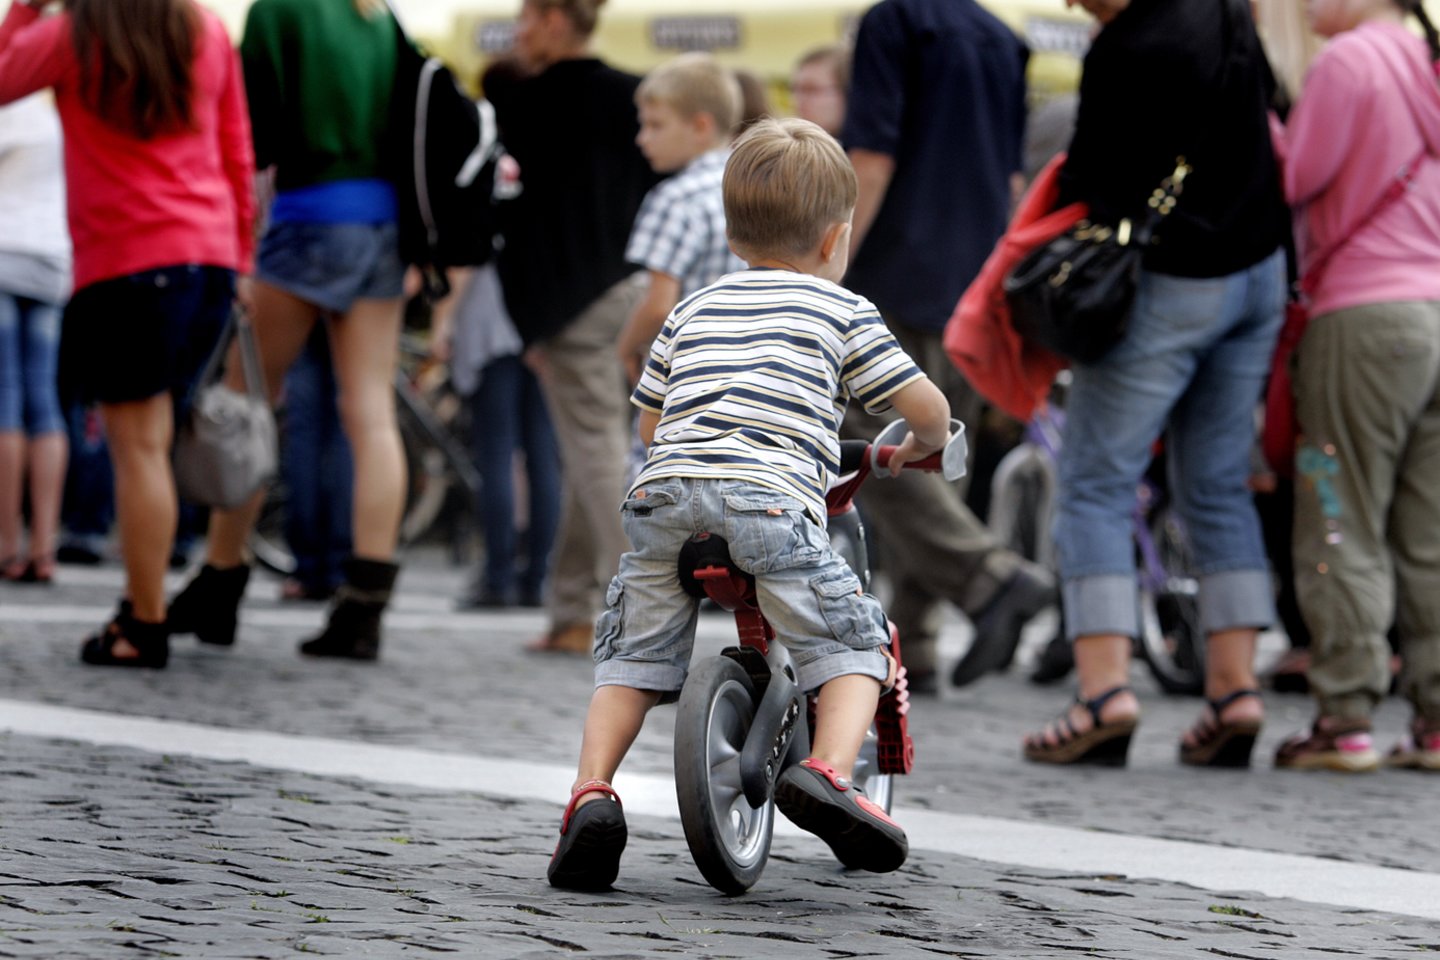 Keliauti dviračiais kartu su mažaisiais gali būti išties smagu ir įdomu tiek tėvams, tiek vaikams.<br>V.Balkūno nuotr.